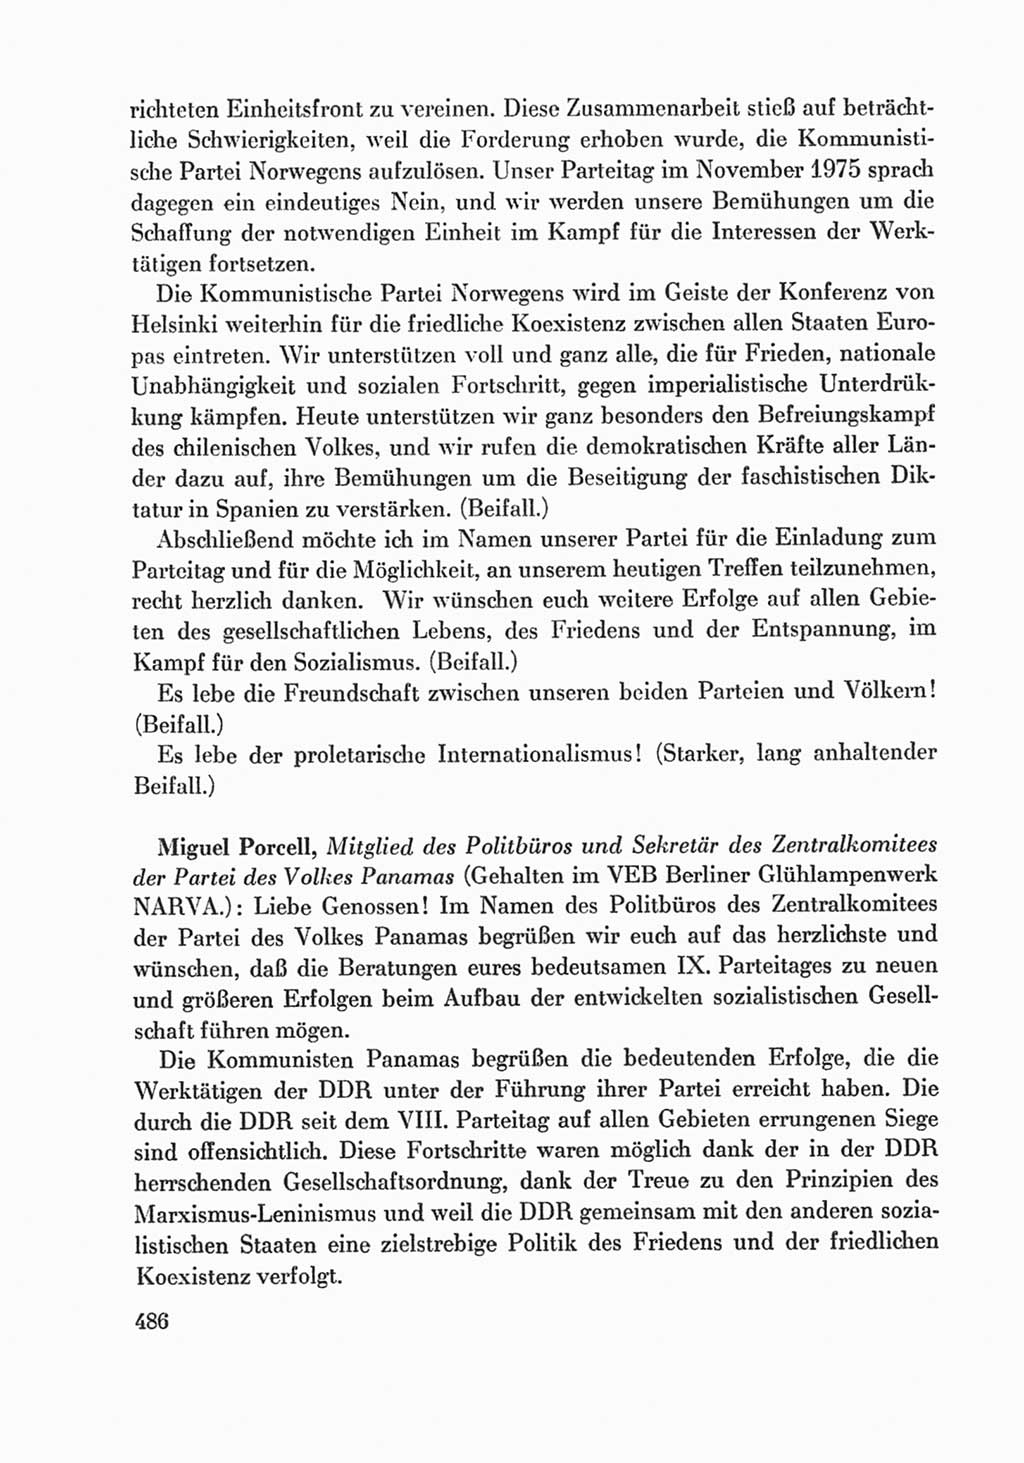 Protokoll der Verhandlungen des Ⅸ. Parteitages der Sozialistischen Einheitspartei Deutschlands (SED) [Deutsche Demokratische Republik (DDR)] 1976, Band 1, Seite 486 (Prot. Verh. Ⅸ. PT SED DDR 1976, Bd. 1, S. 486)